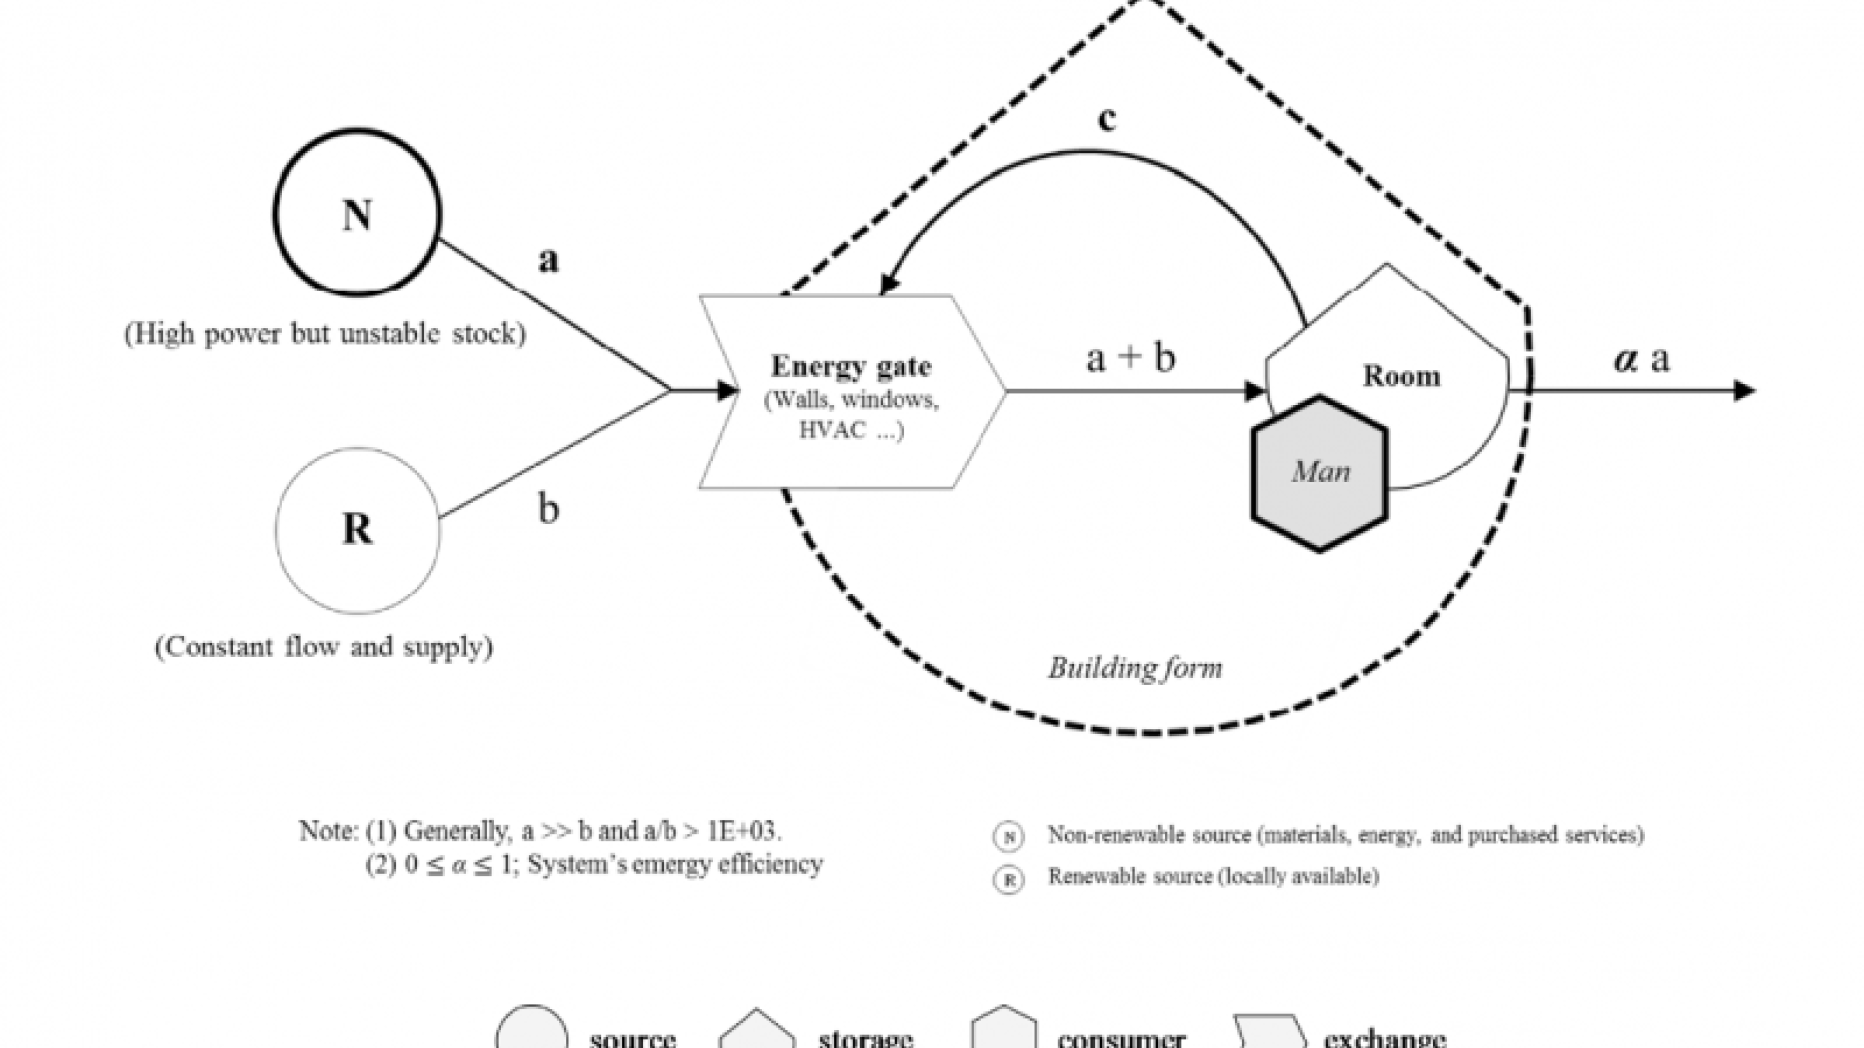 Diagram of energy feedback system